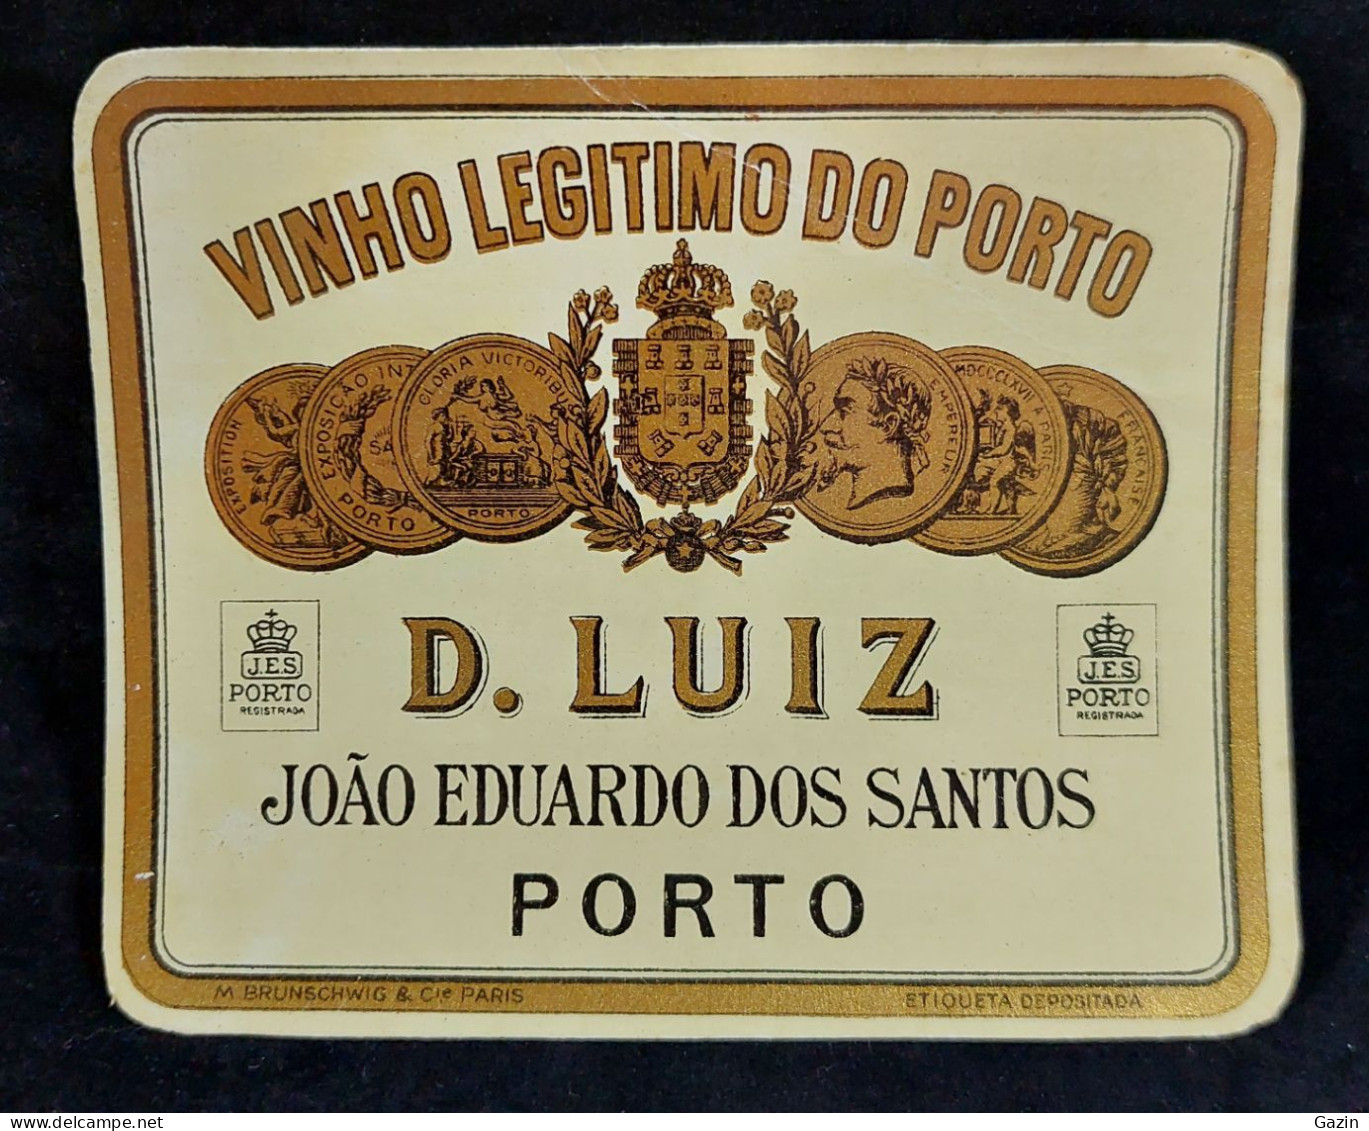 C7/1 -  Rótulo * Vinho  Legitimo Do Porto * João Eduardo Dos Santos *  Portugal - Bebidas